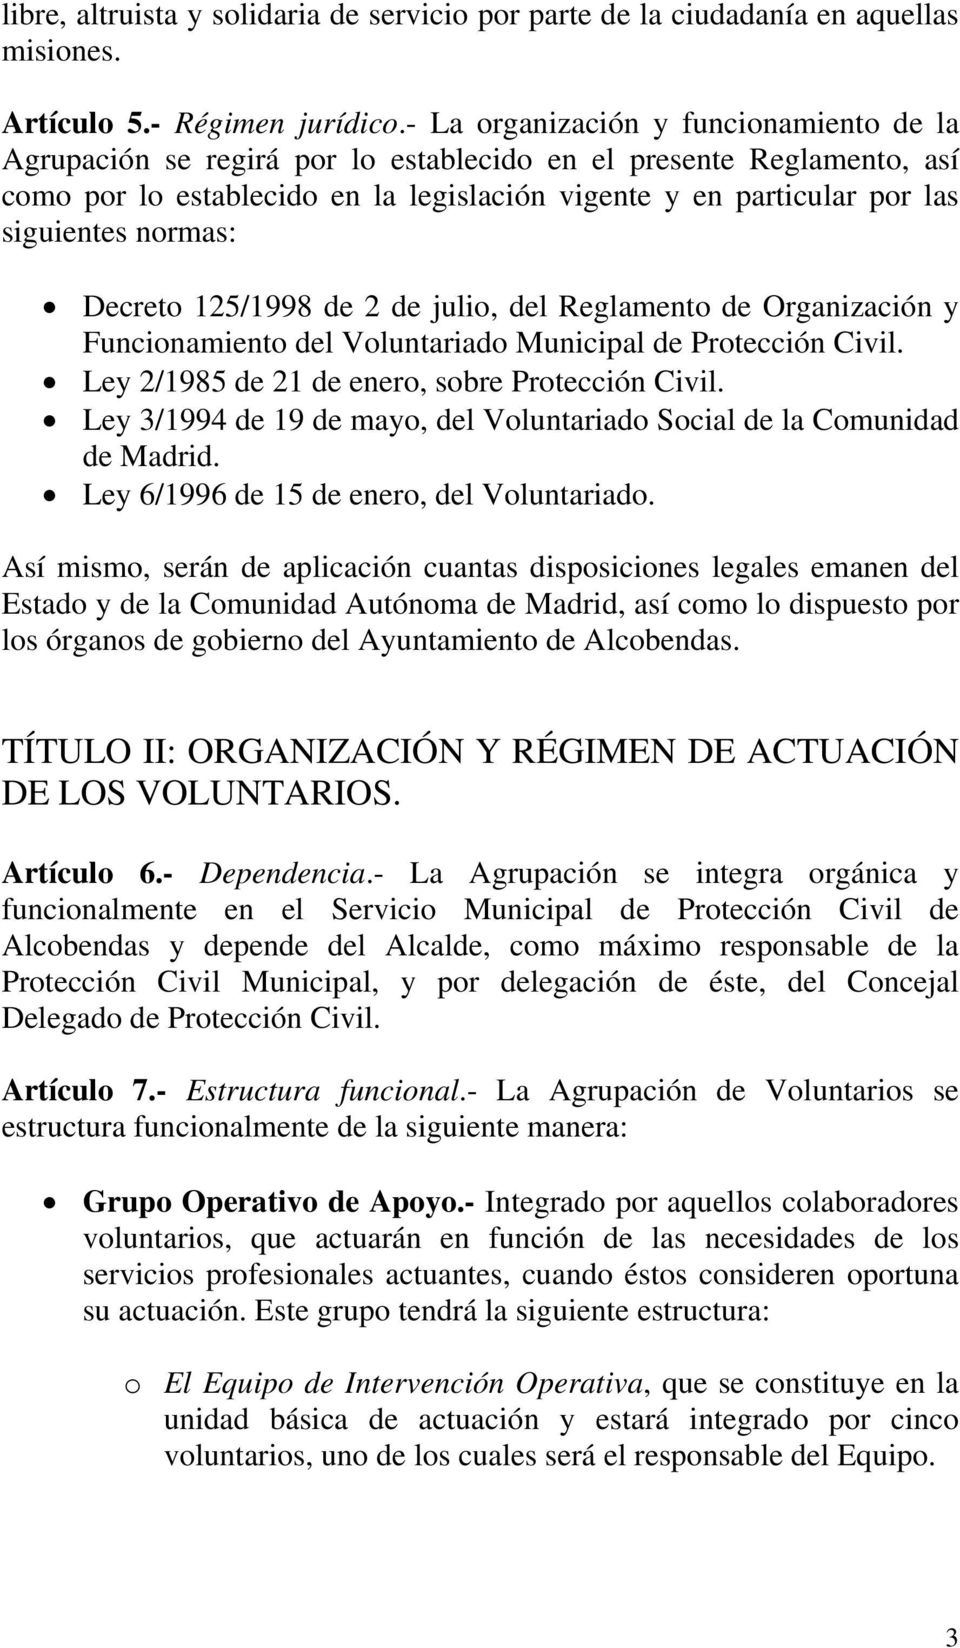 normas: Decreto 125/1998 de 2 de julio, del Reglamento de Organización y Funcionamiento del Voluntariado Municipal de Protección Civil. Ley 2/1985 de 21 de enero, sobre Protección Civil.